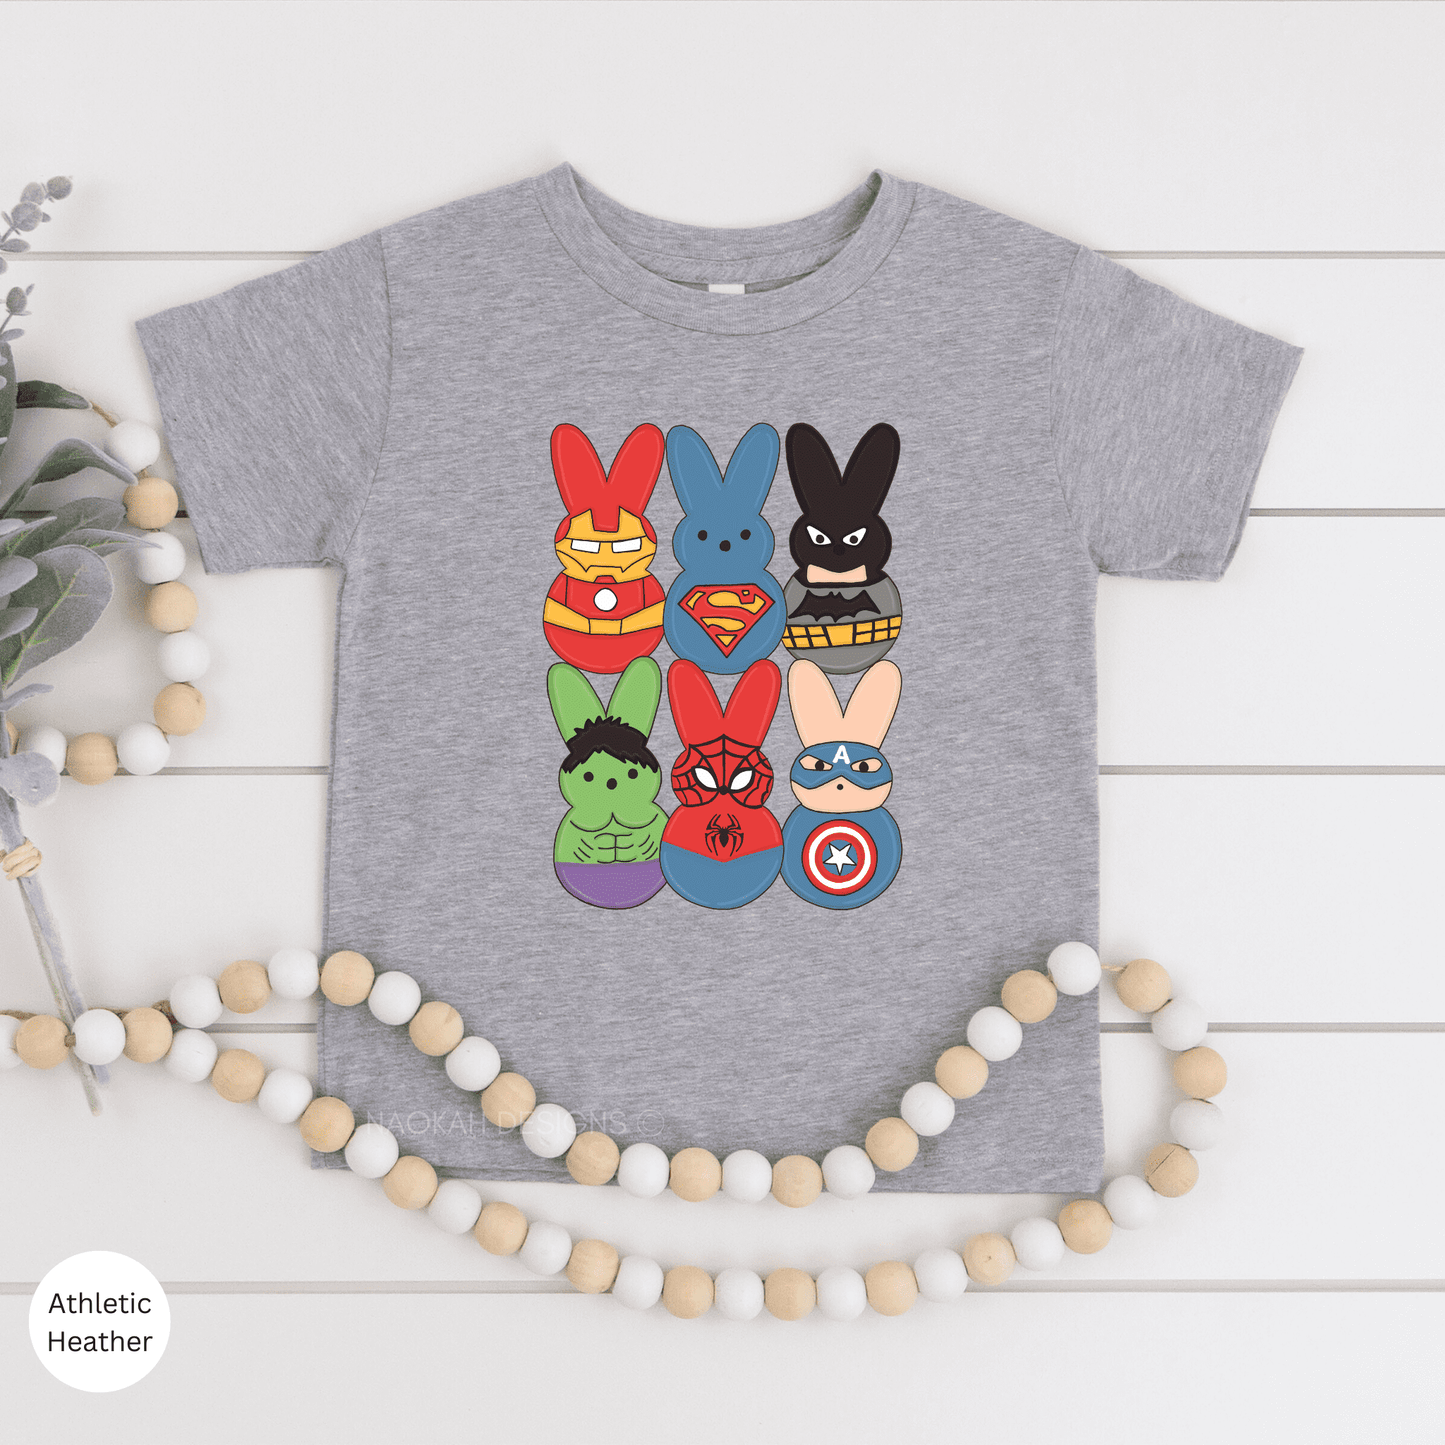 Easter Superheroes Peeps Shirt, Disney Child's Easter Shirt, Disney Kids Bunny Shirt, Superhero Easter Egg, Easter Kids Shirt